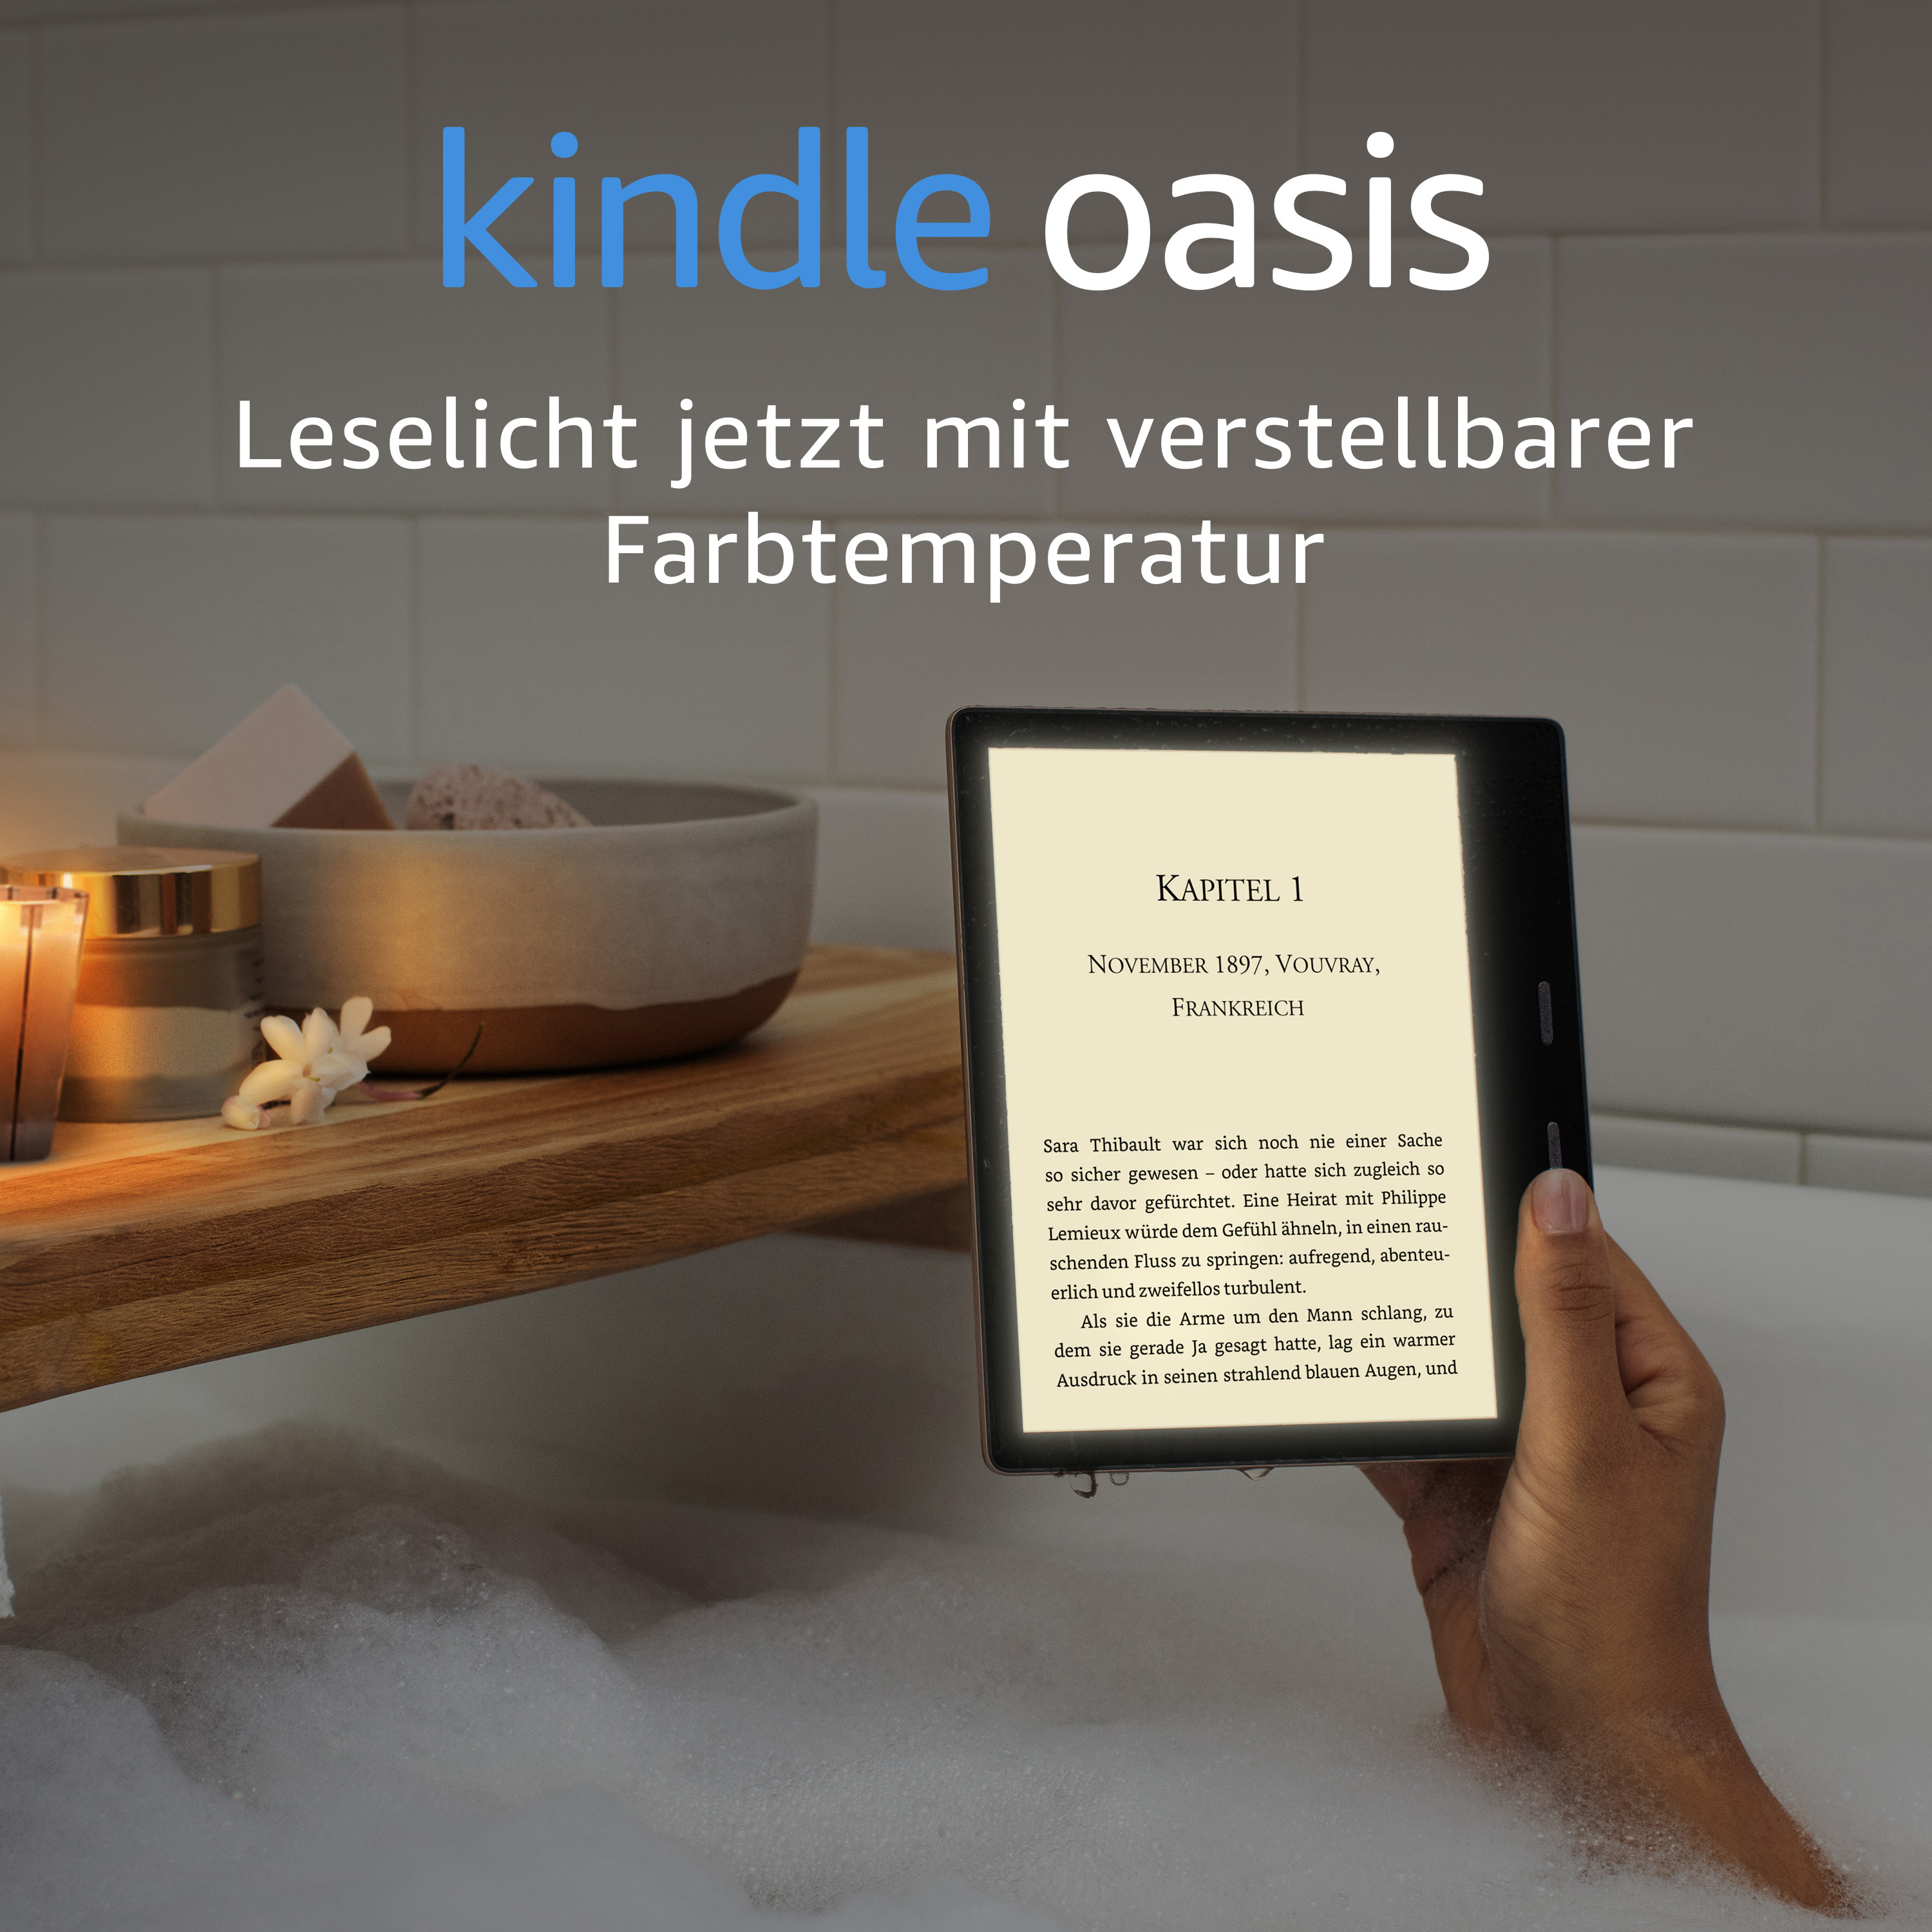 verstellbarer Oasis inkl. Grafit KINDLE Reader eBook Farbtemperatur, WLAN, mit Werbung Leselicht wasserfest, Mit